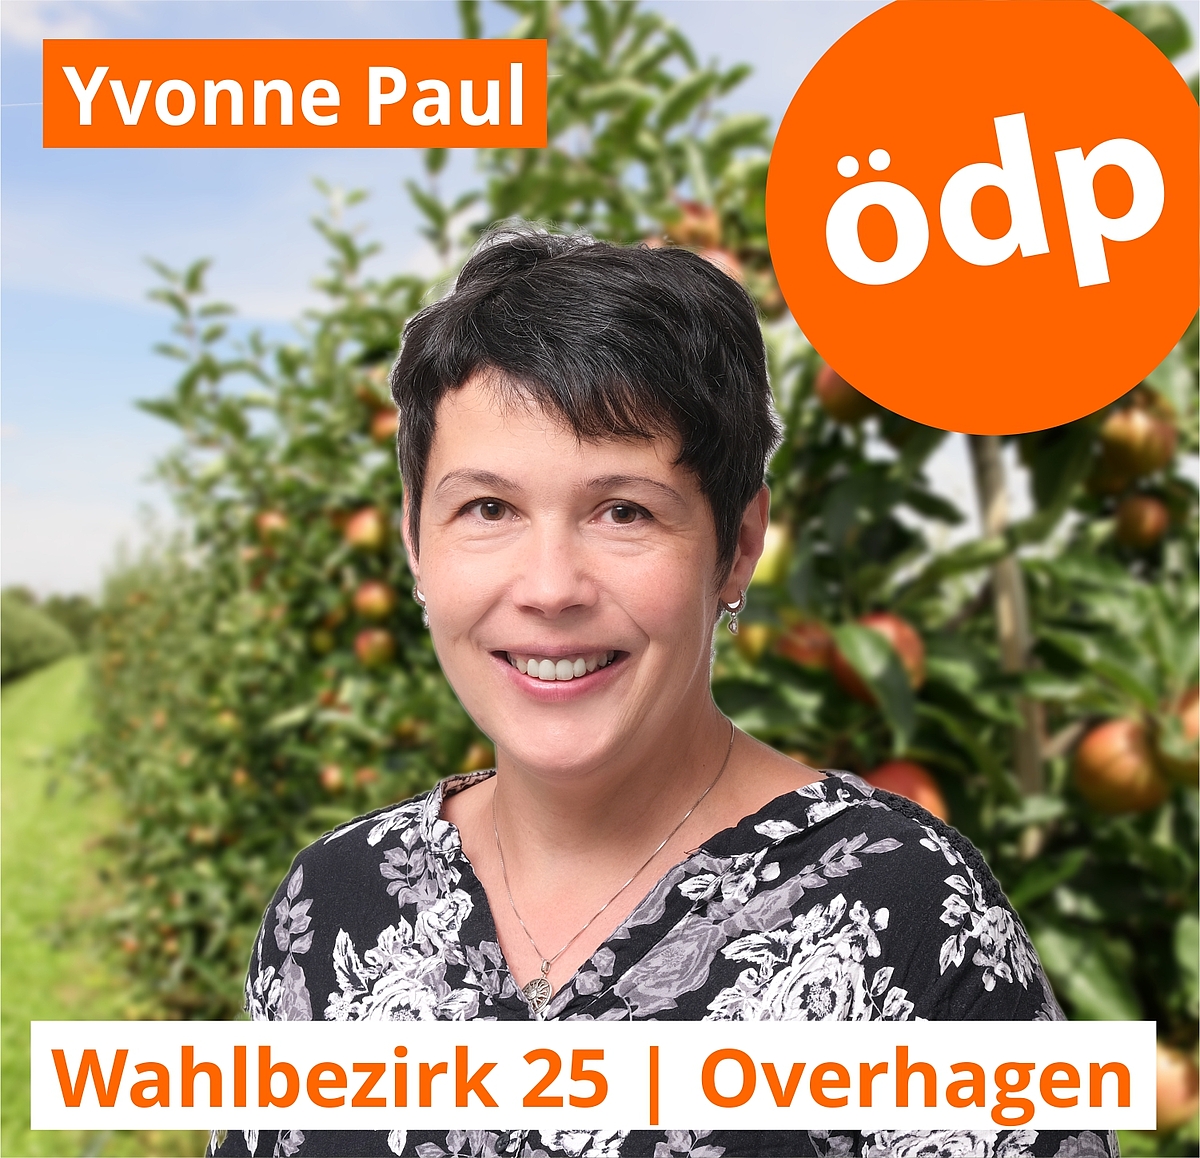 Yvonne Paul | Wahlbezirk 25 | Overhagen